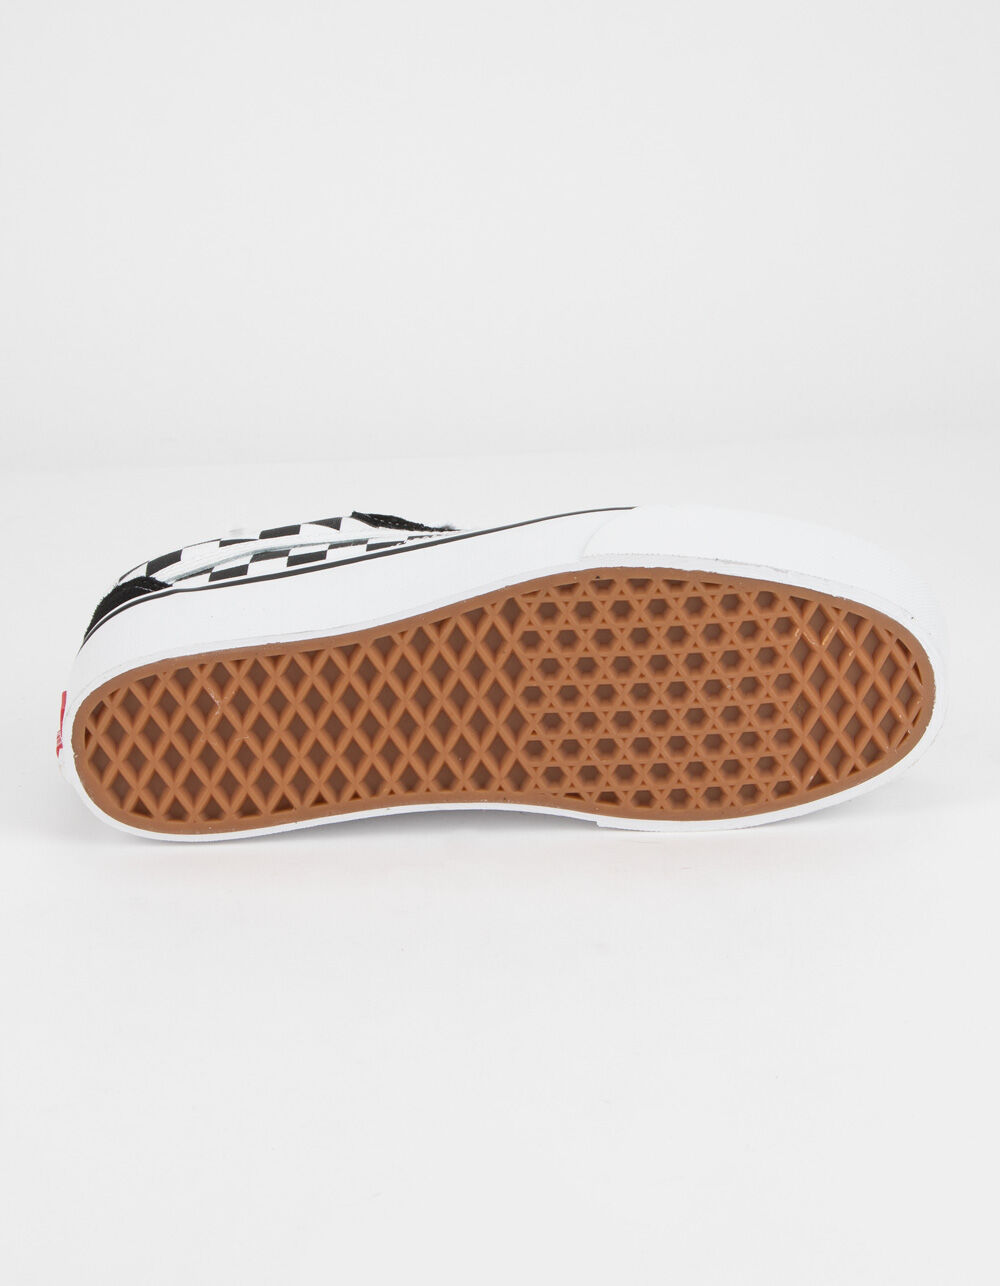 VANS Checkerboard Old Skool Platform Womens Shoes - CHECKERBOARD | Tillys